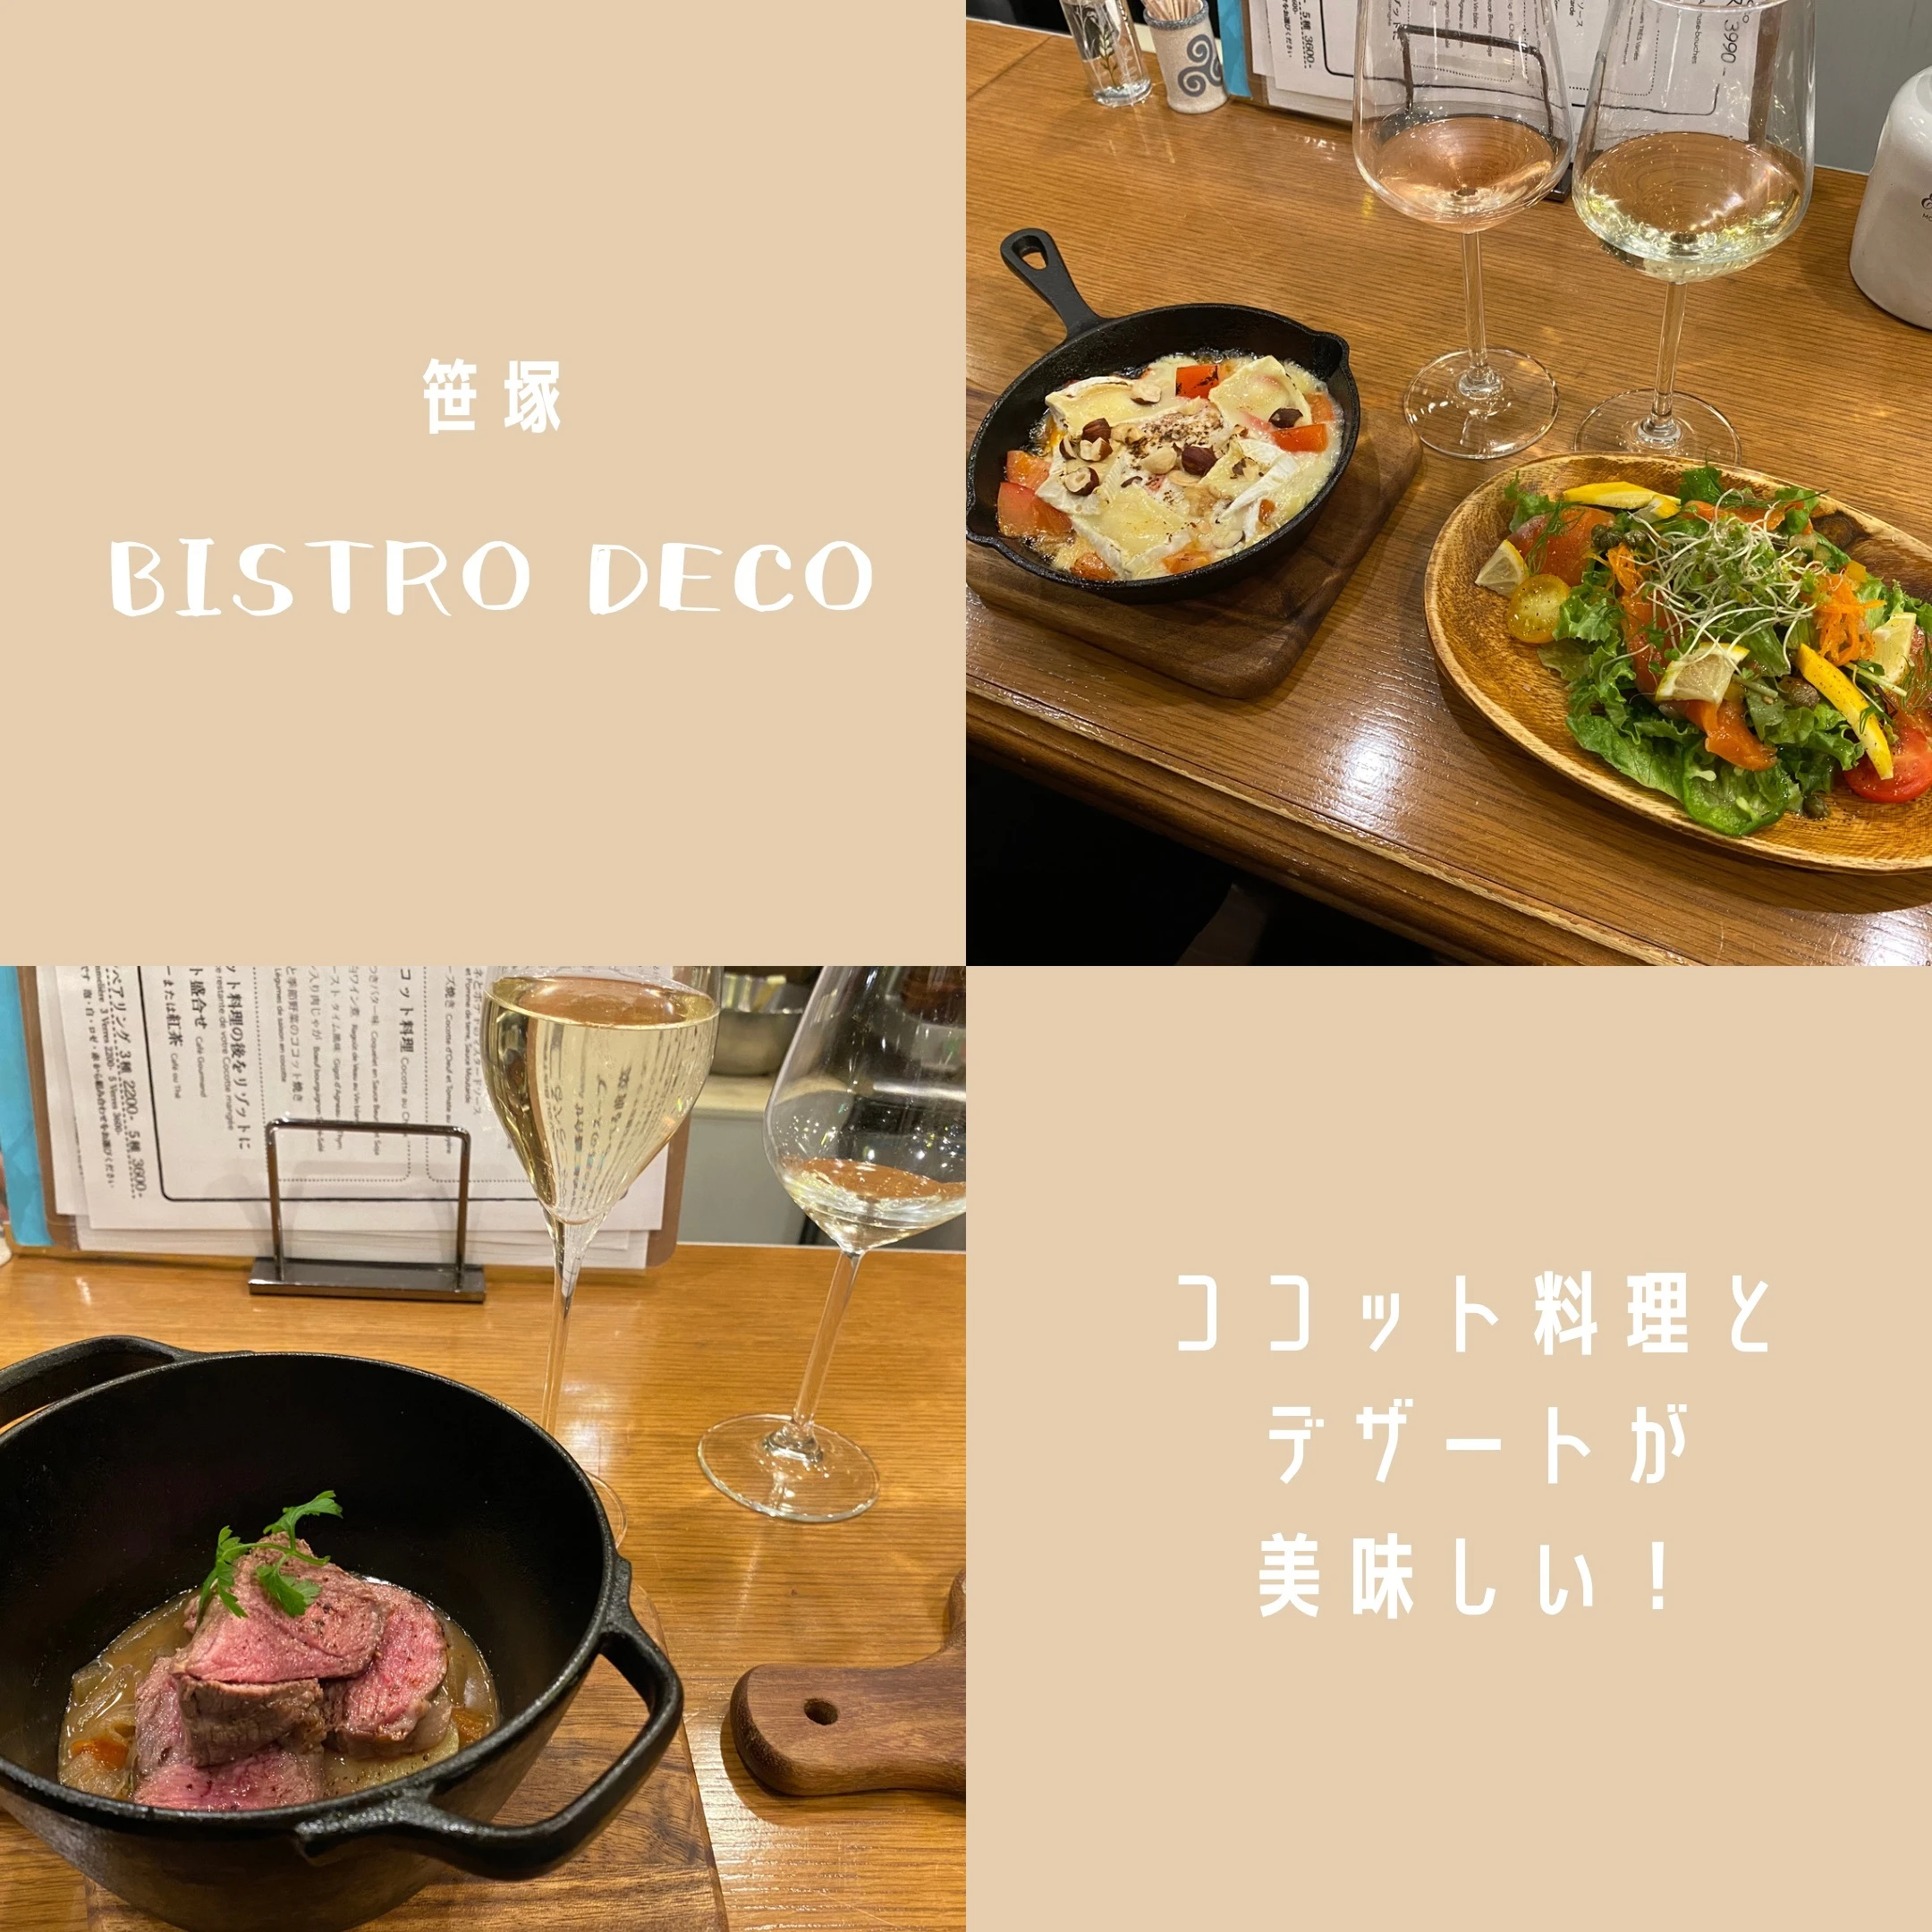 笹塚 Bistro deco ココット料理 フレンチ